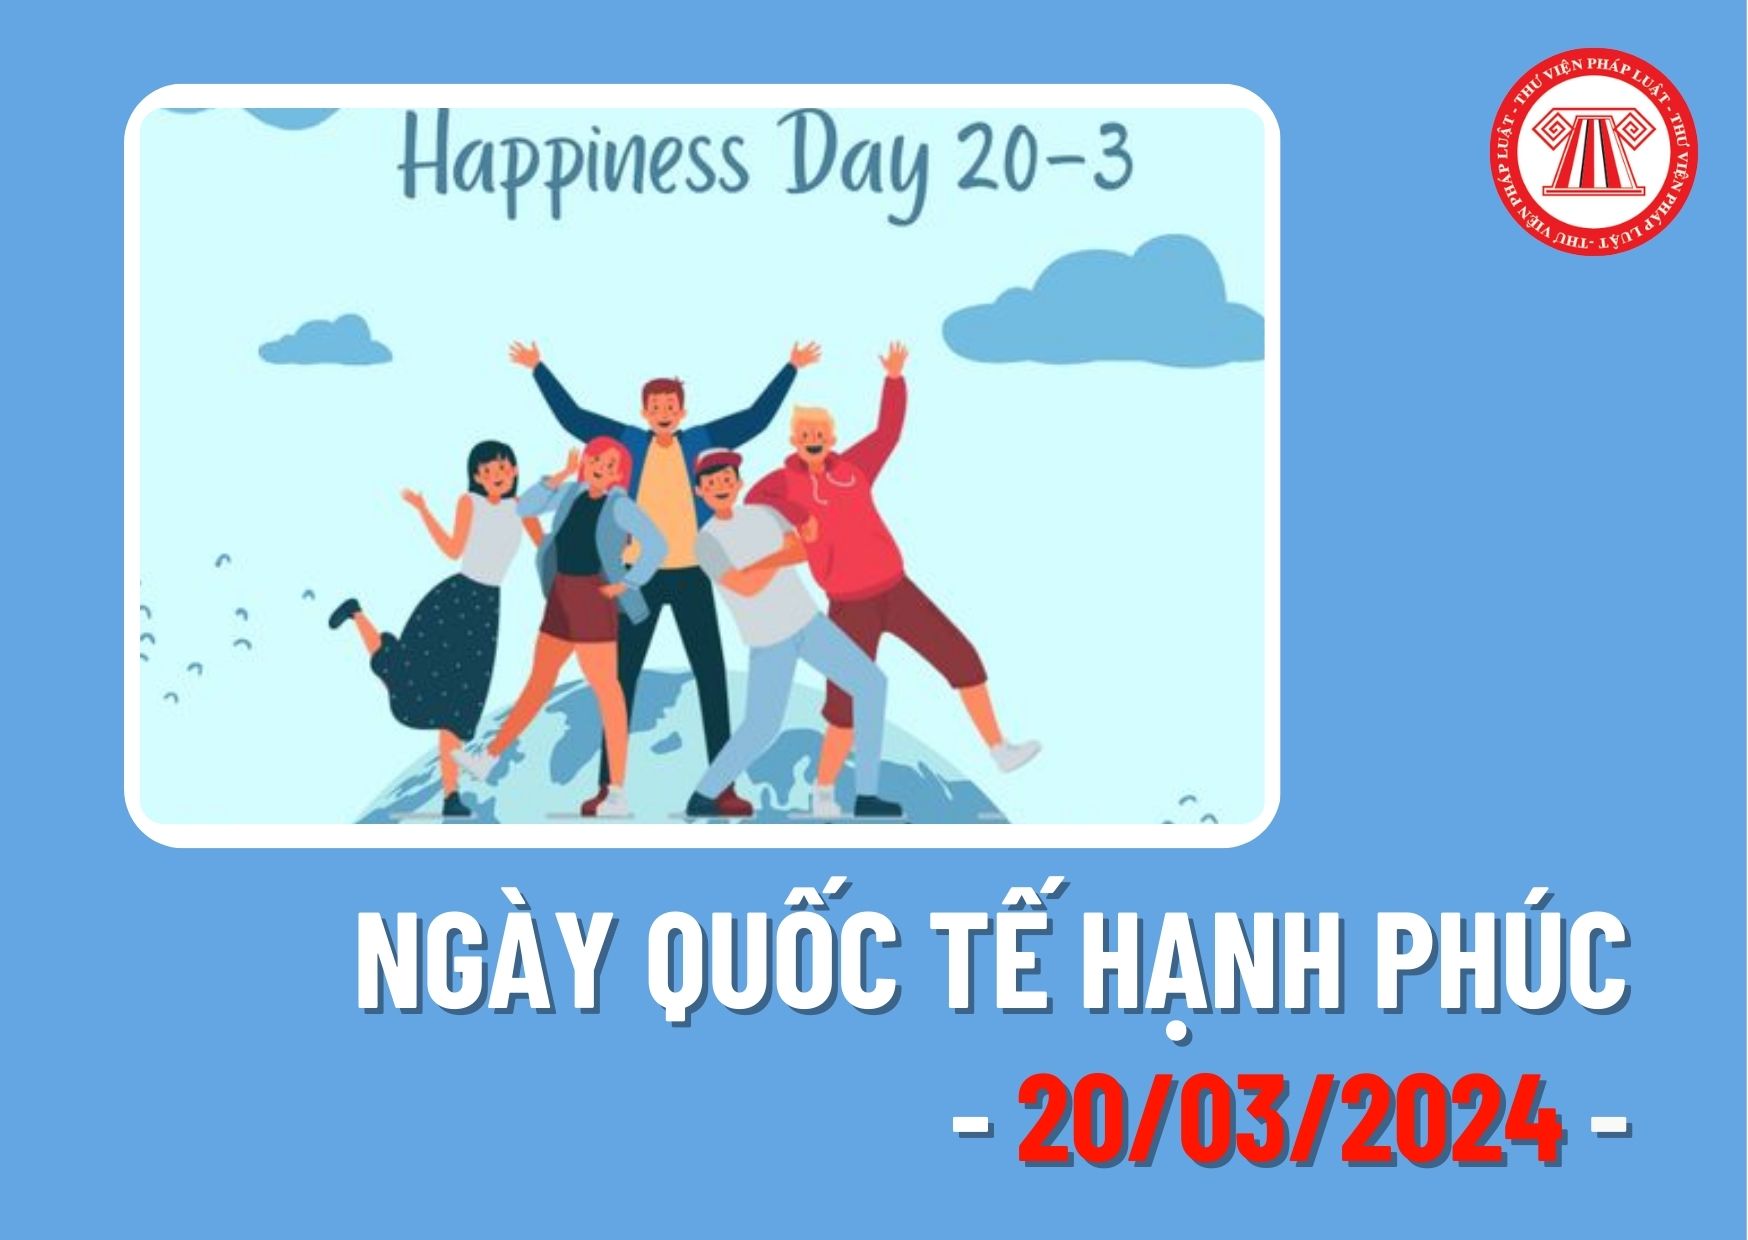 Ngày 20/3/2024 là ngày gì? Người lao động đi làm ngày Quốc tế Hạnh phúc có được nhận thưởng từ công ty không?